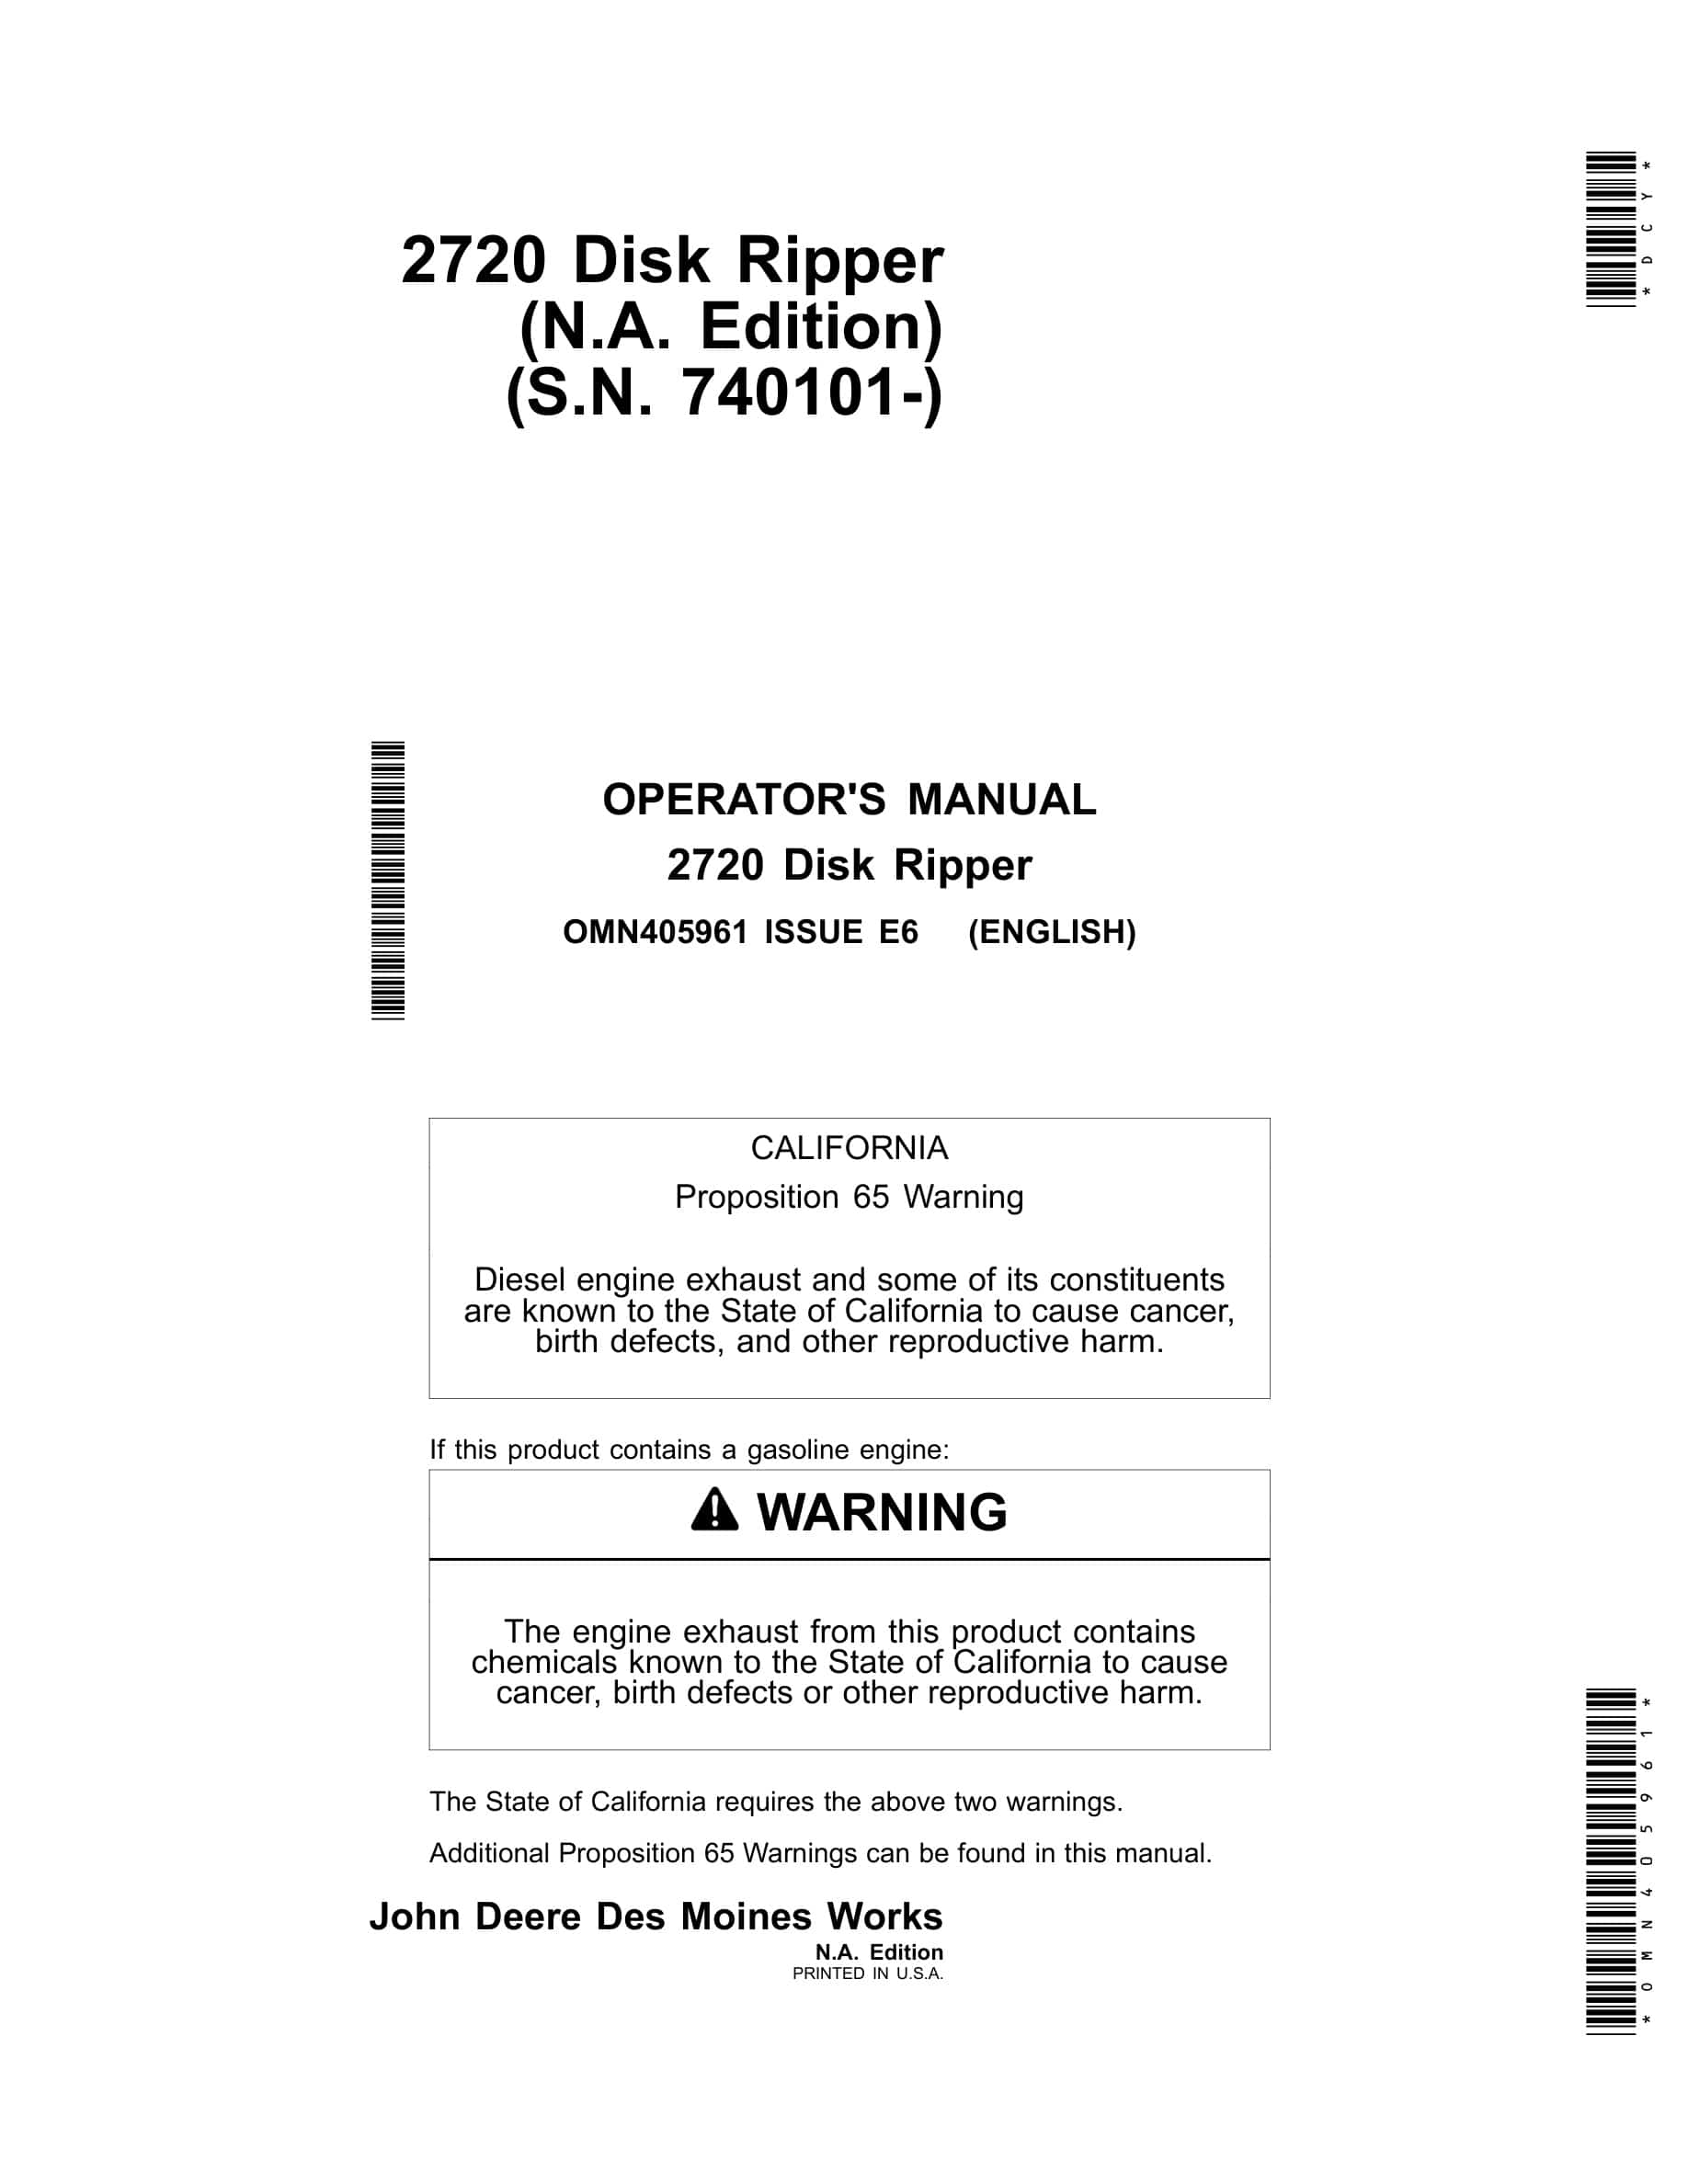 John Deere 2720 Disk Ripper Operator Manual OMN405961-1